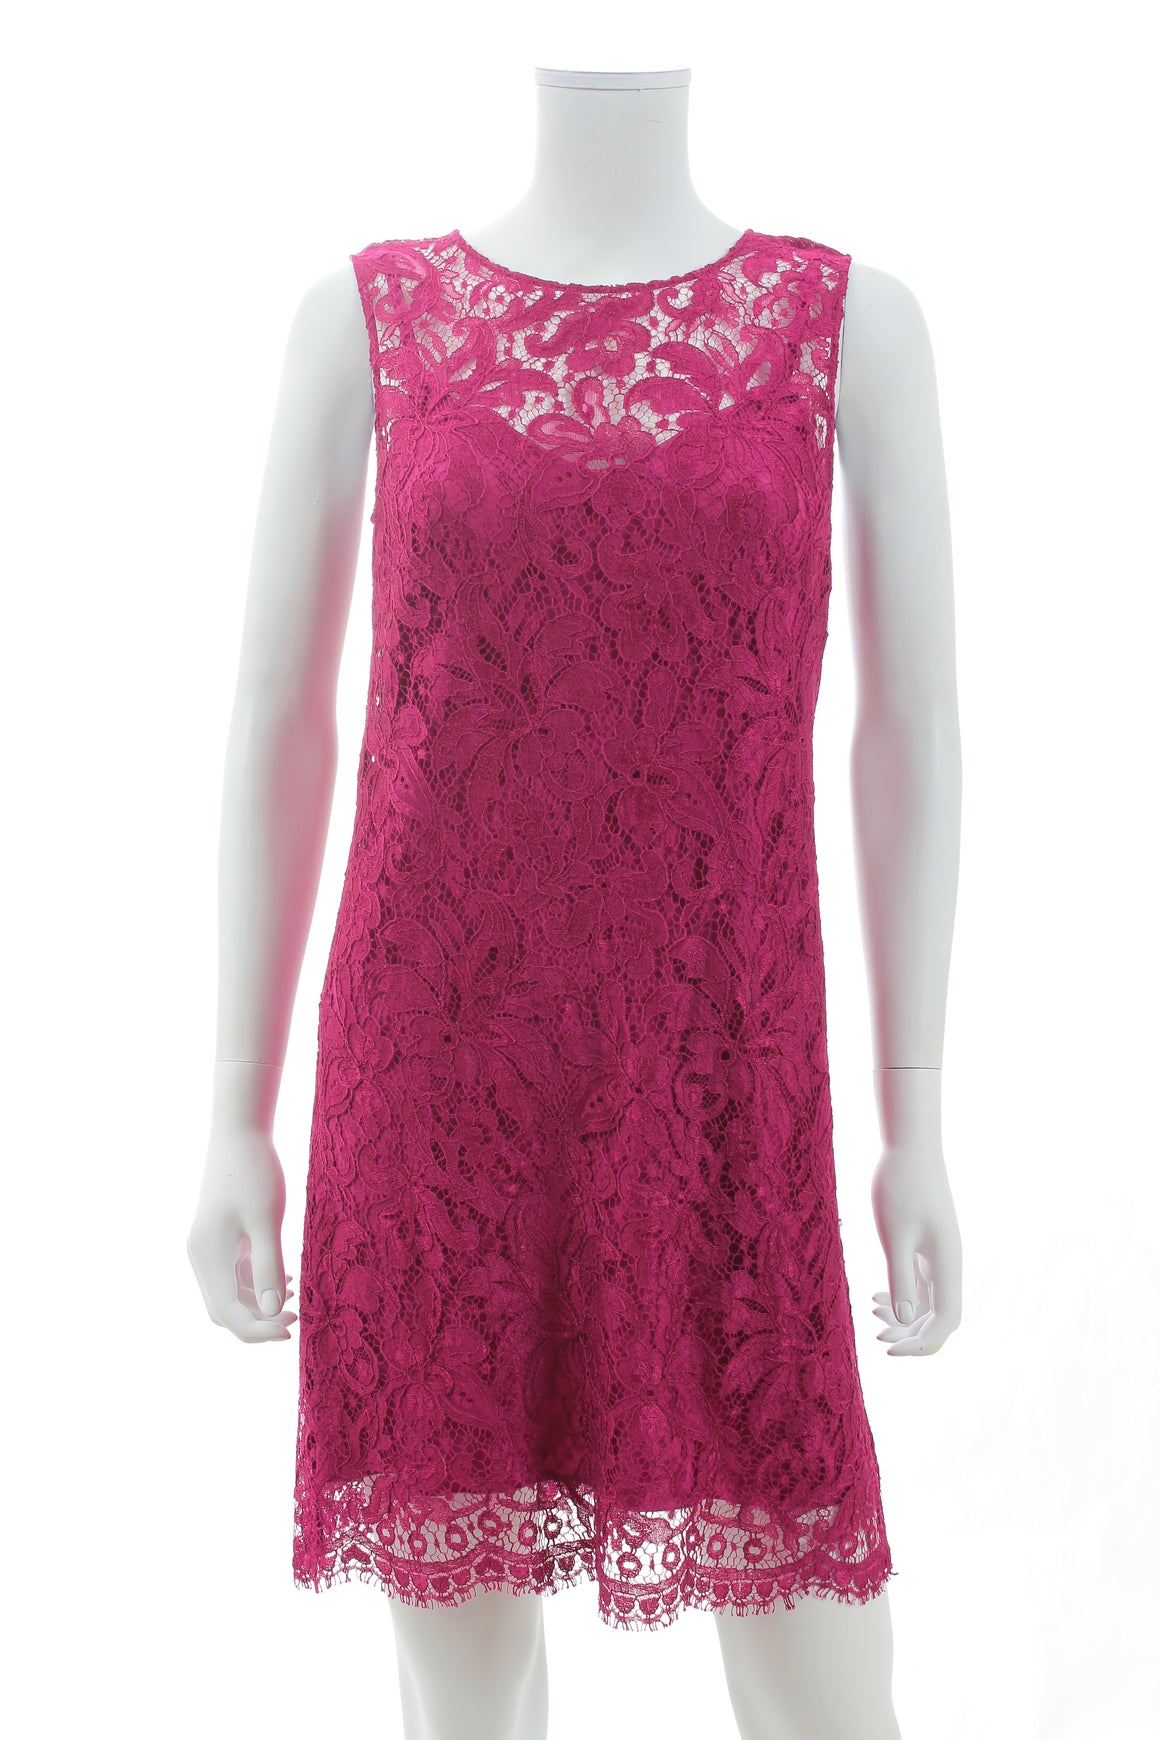 Dolce & Gabbana Cotton-Blend Sleeveless Lace Mini Dress